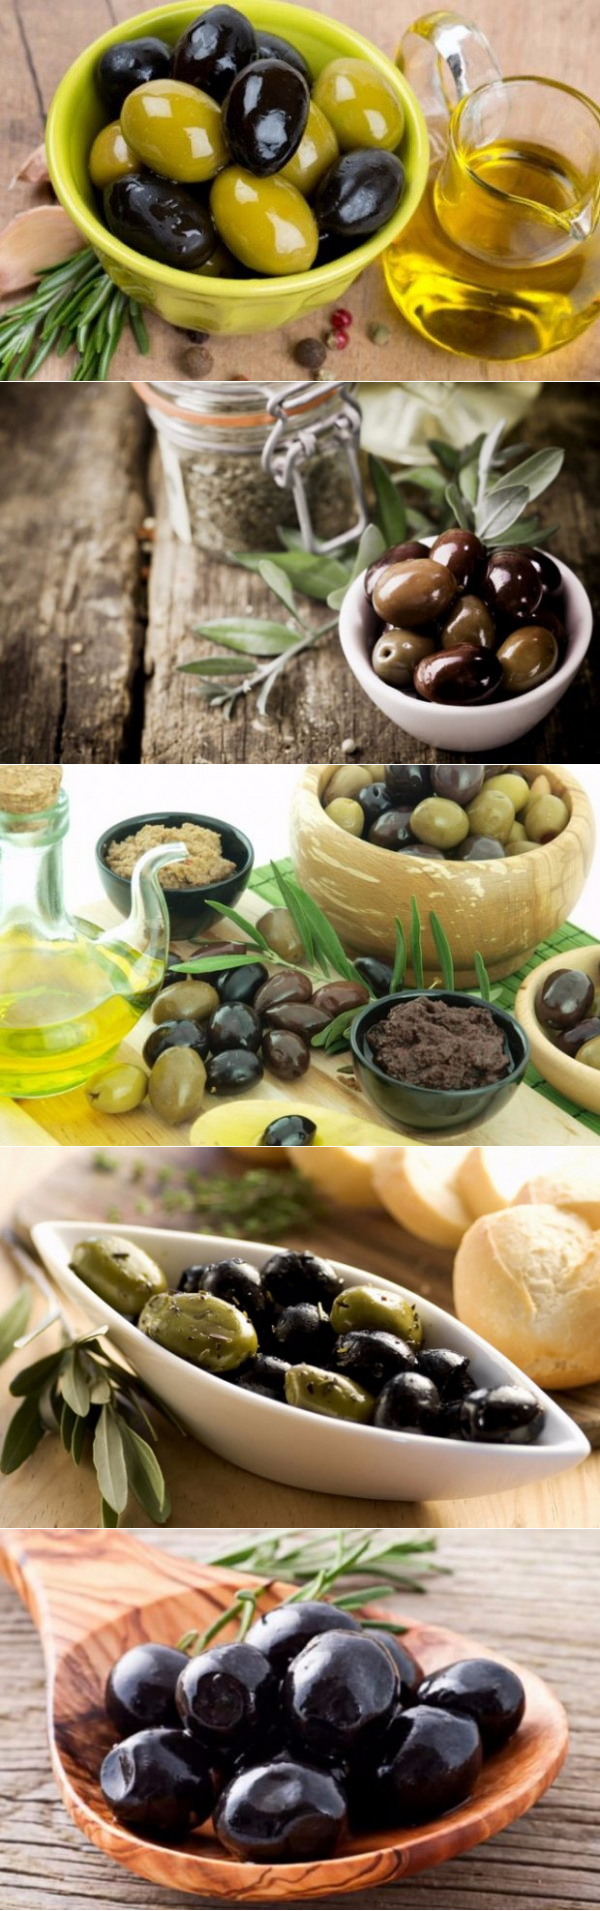 Польза и вред маслин для организма человека